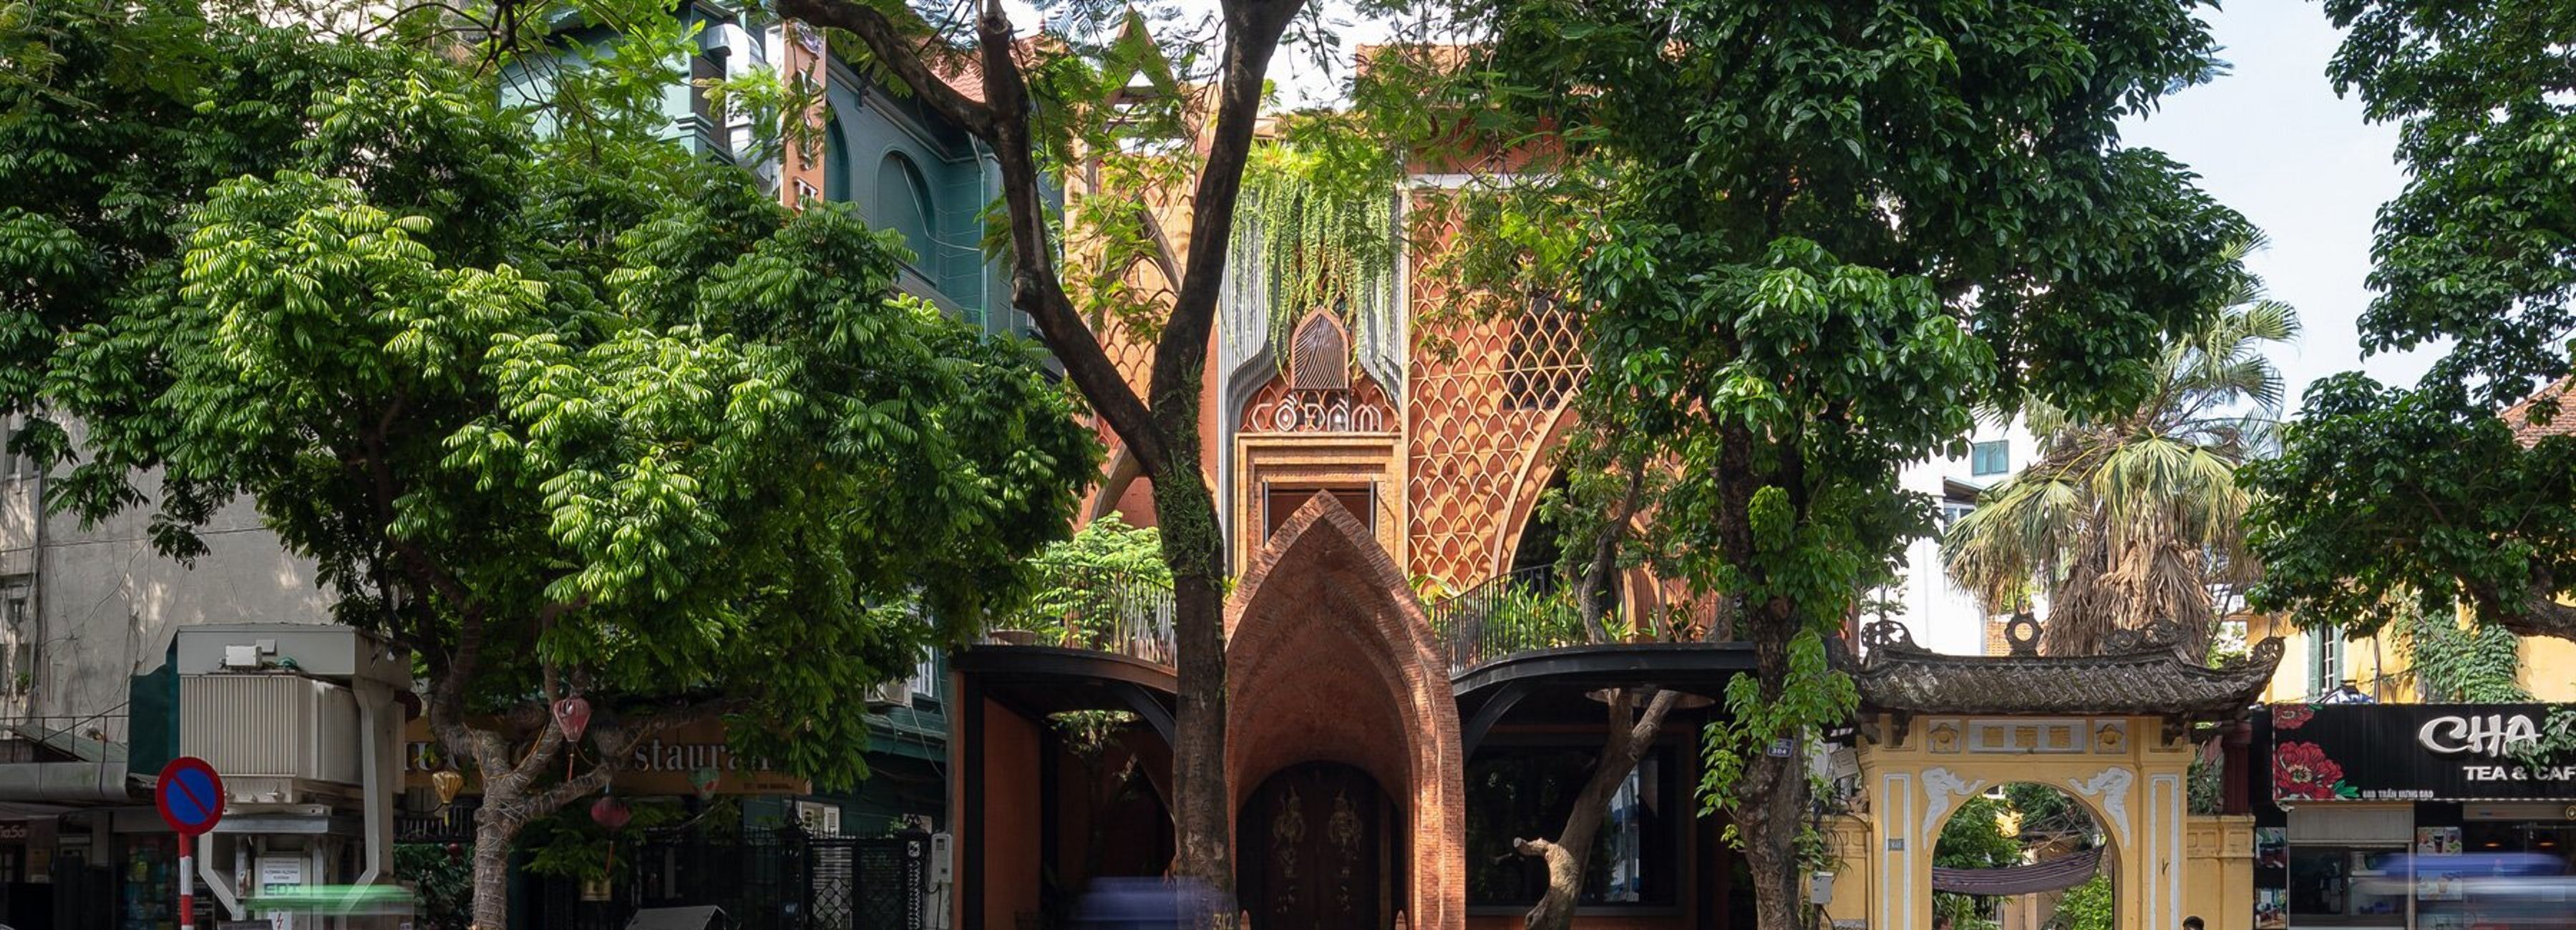 Ресторан и храм в одном: как выглядит особое здание во Вьетнаме – потрясающие фото